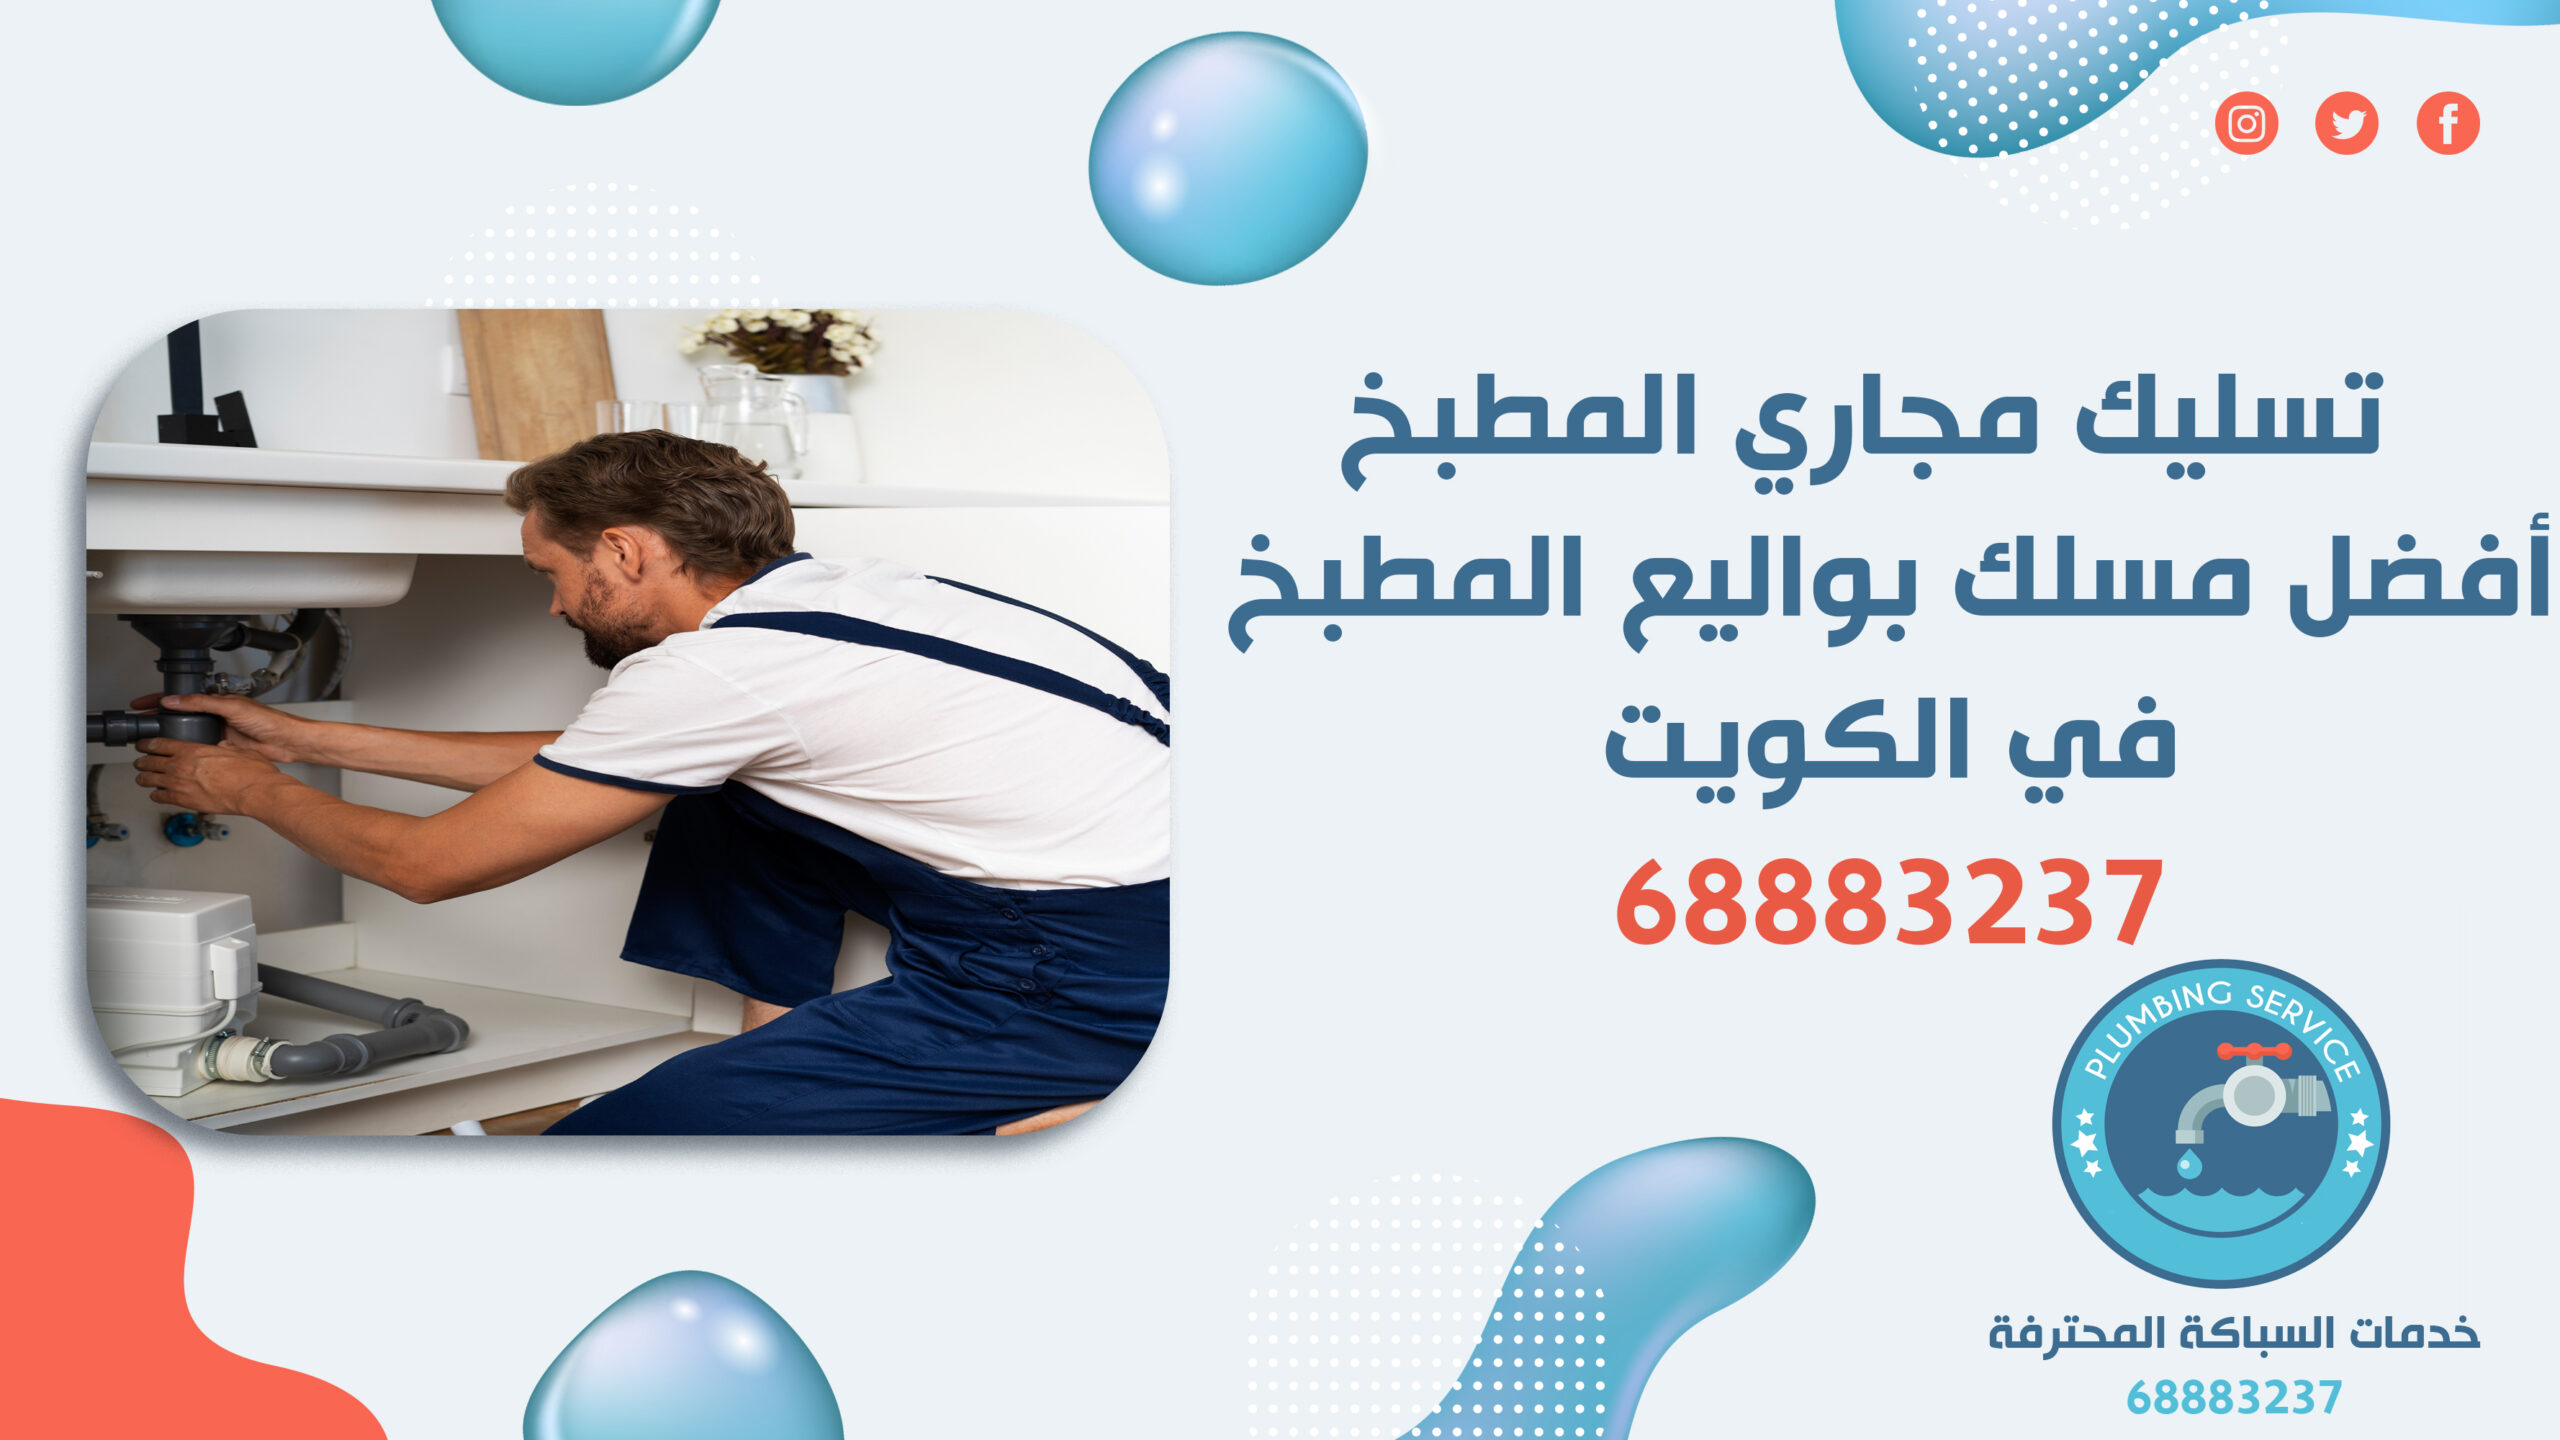 تسليك مجاري المطبخ | 68883237 | أفضل مسلك بواليع المطبخ في الكويت